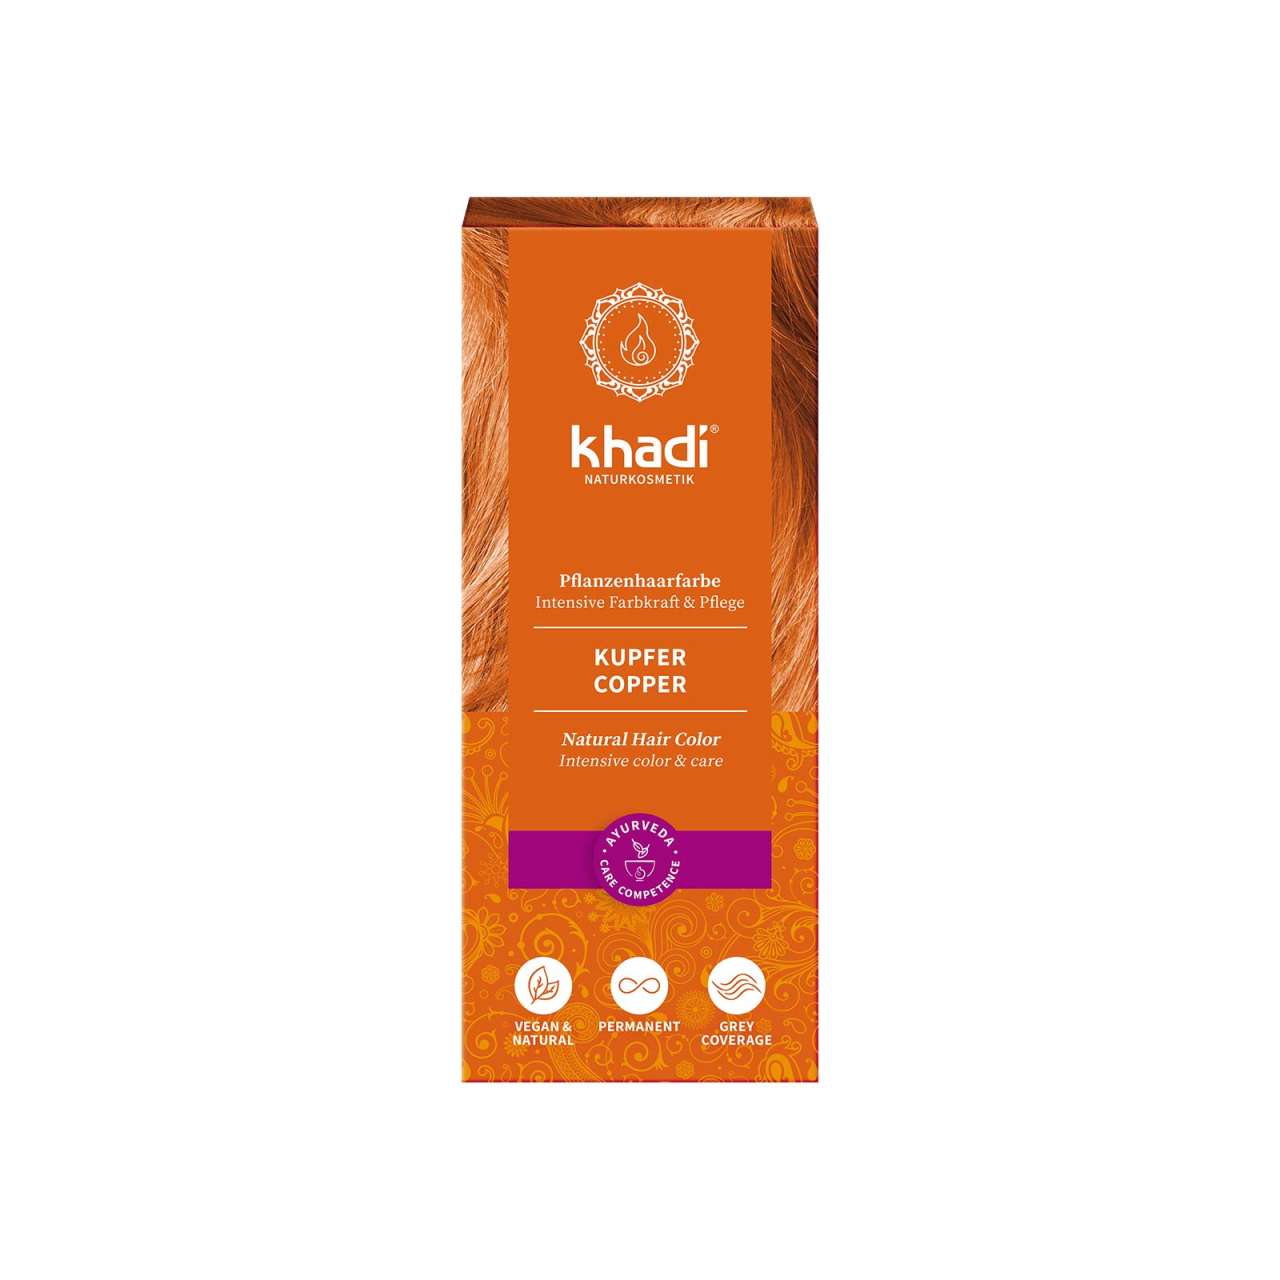 Khadi Kupfer: Natürliche Haarfarbe für lebendige Rottöne